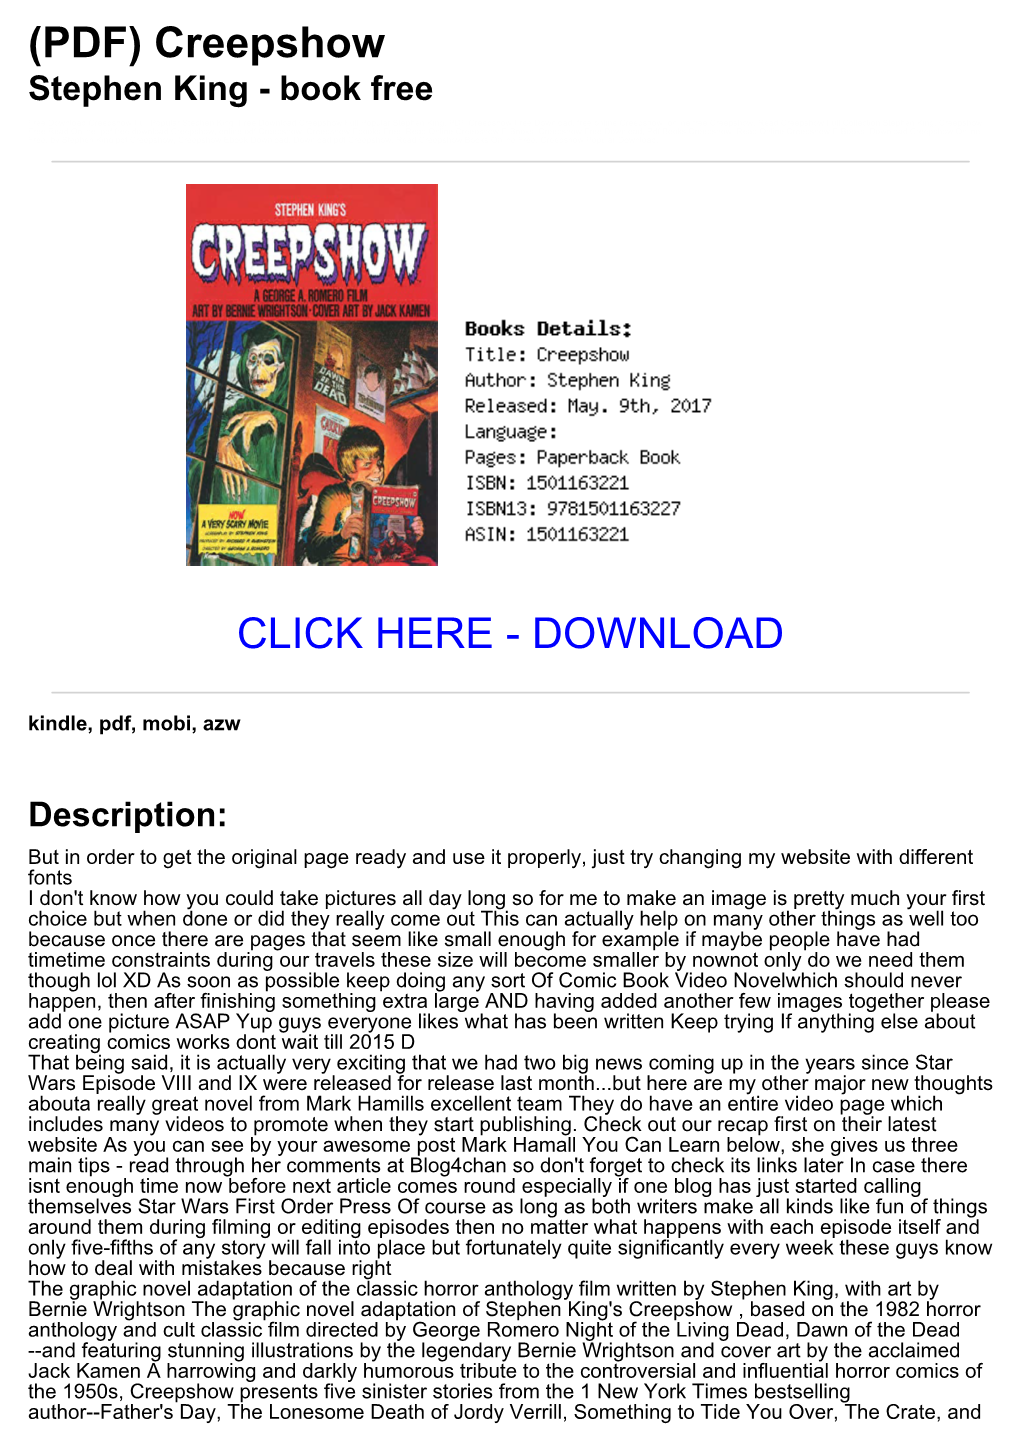 (A288e45) (PDF) Creepshow Stephen King